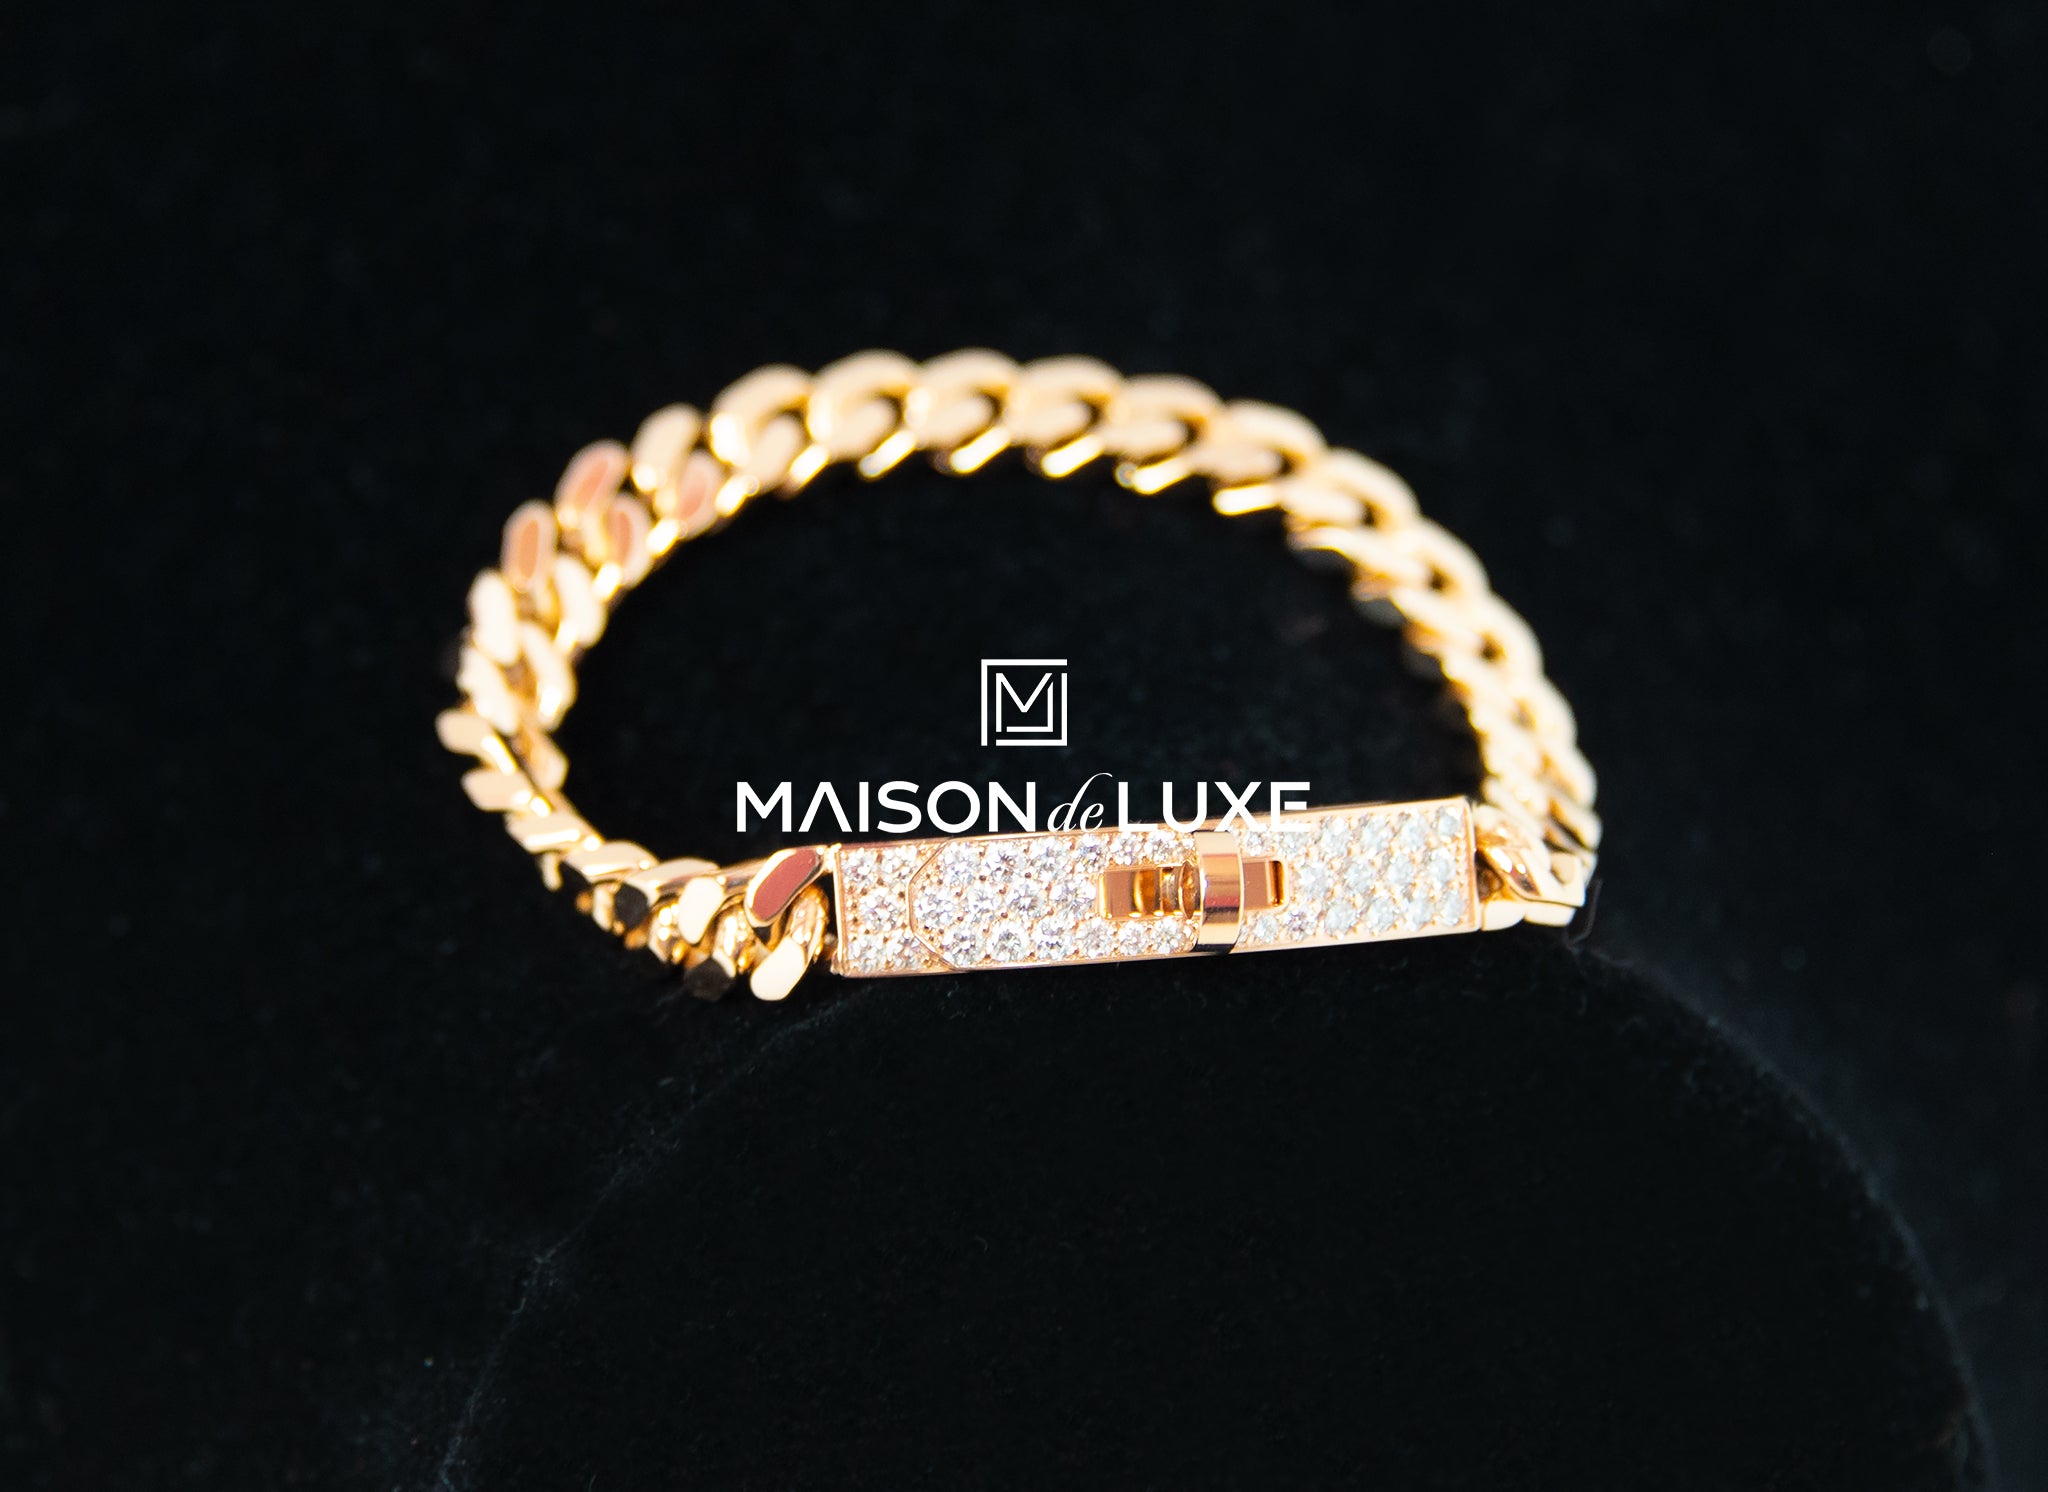 Hermes 18K Rose Gold Diamond PM Kelly Chaine Bracelet LG